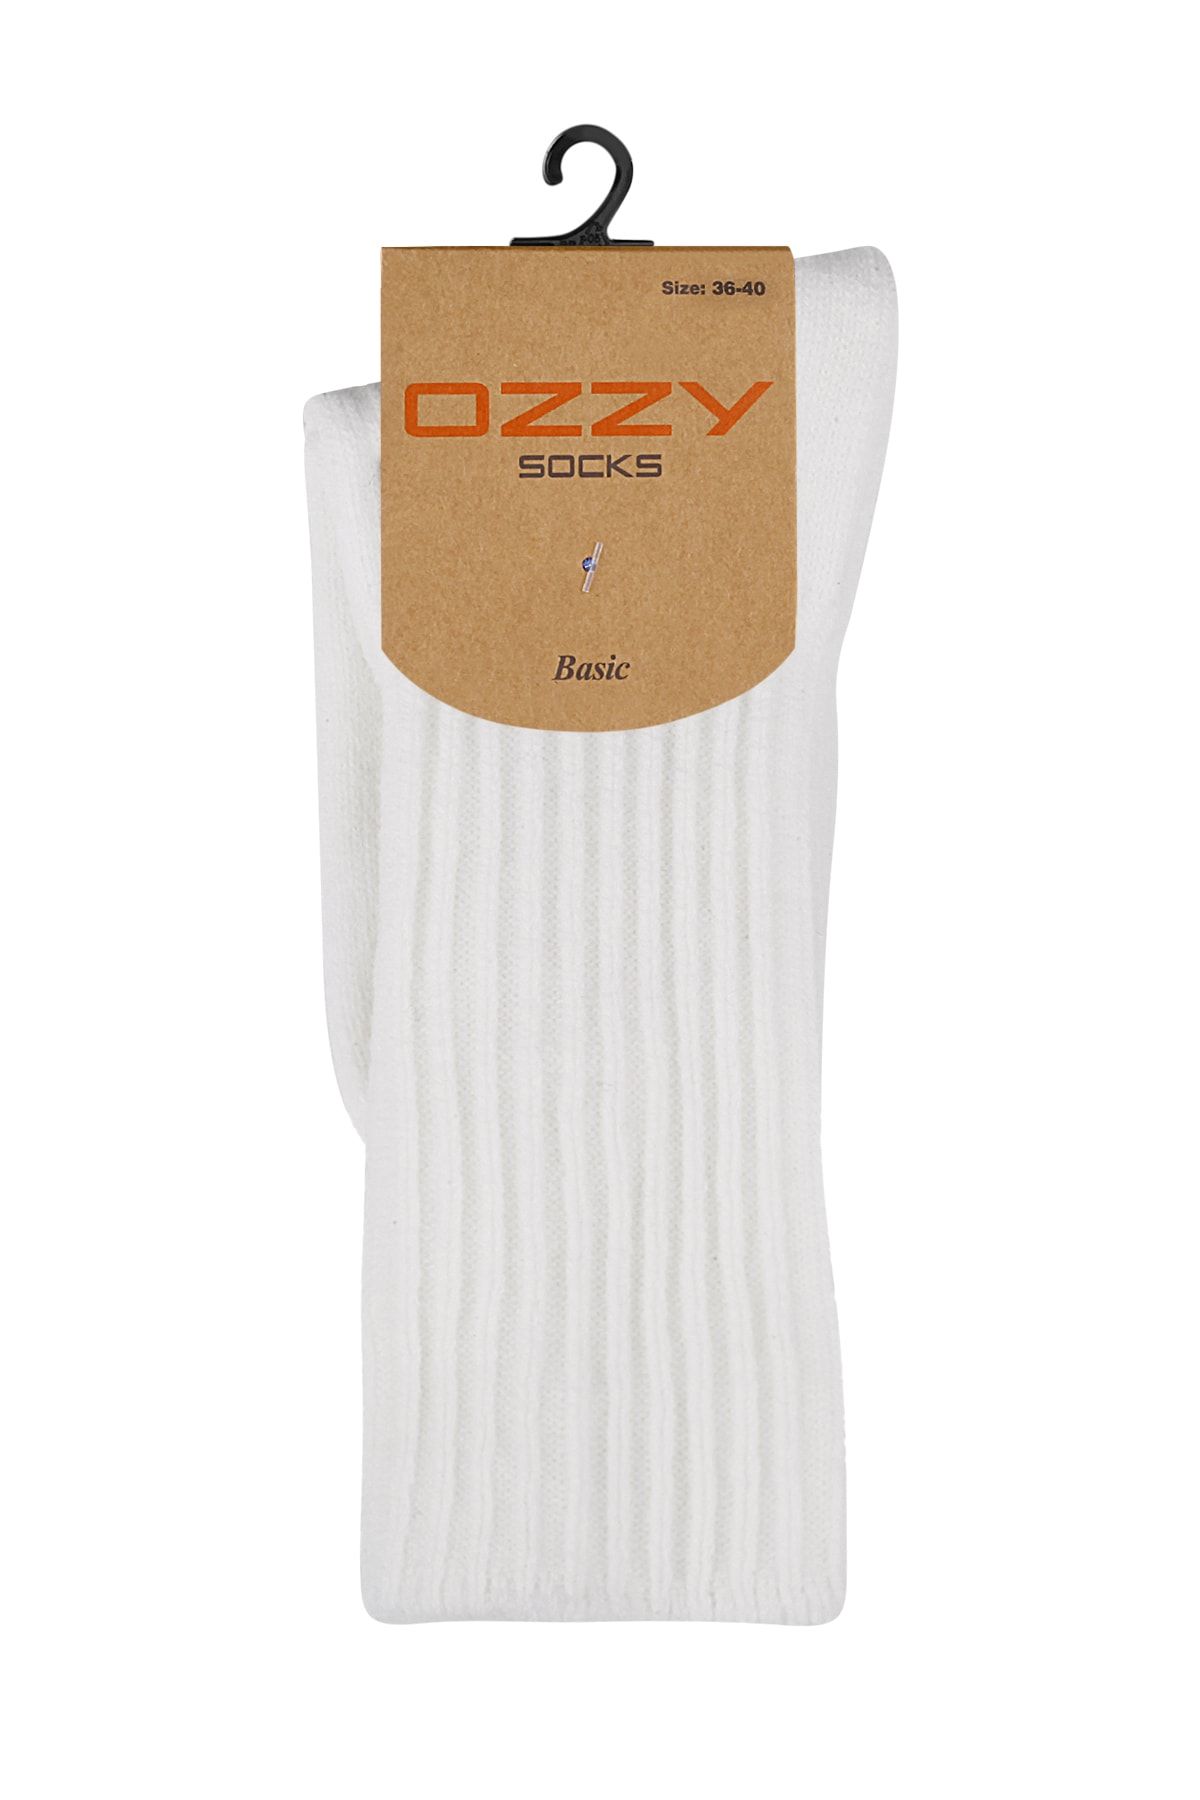 Ozzy Socks Kışlık Kadın Yünlü Ekru Renk Uyku Çorabı Soft Touch